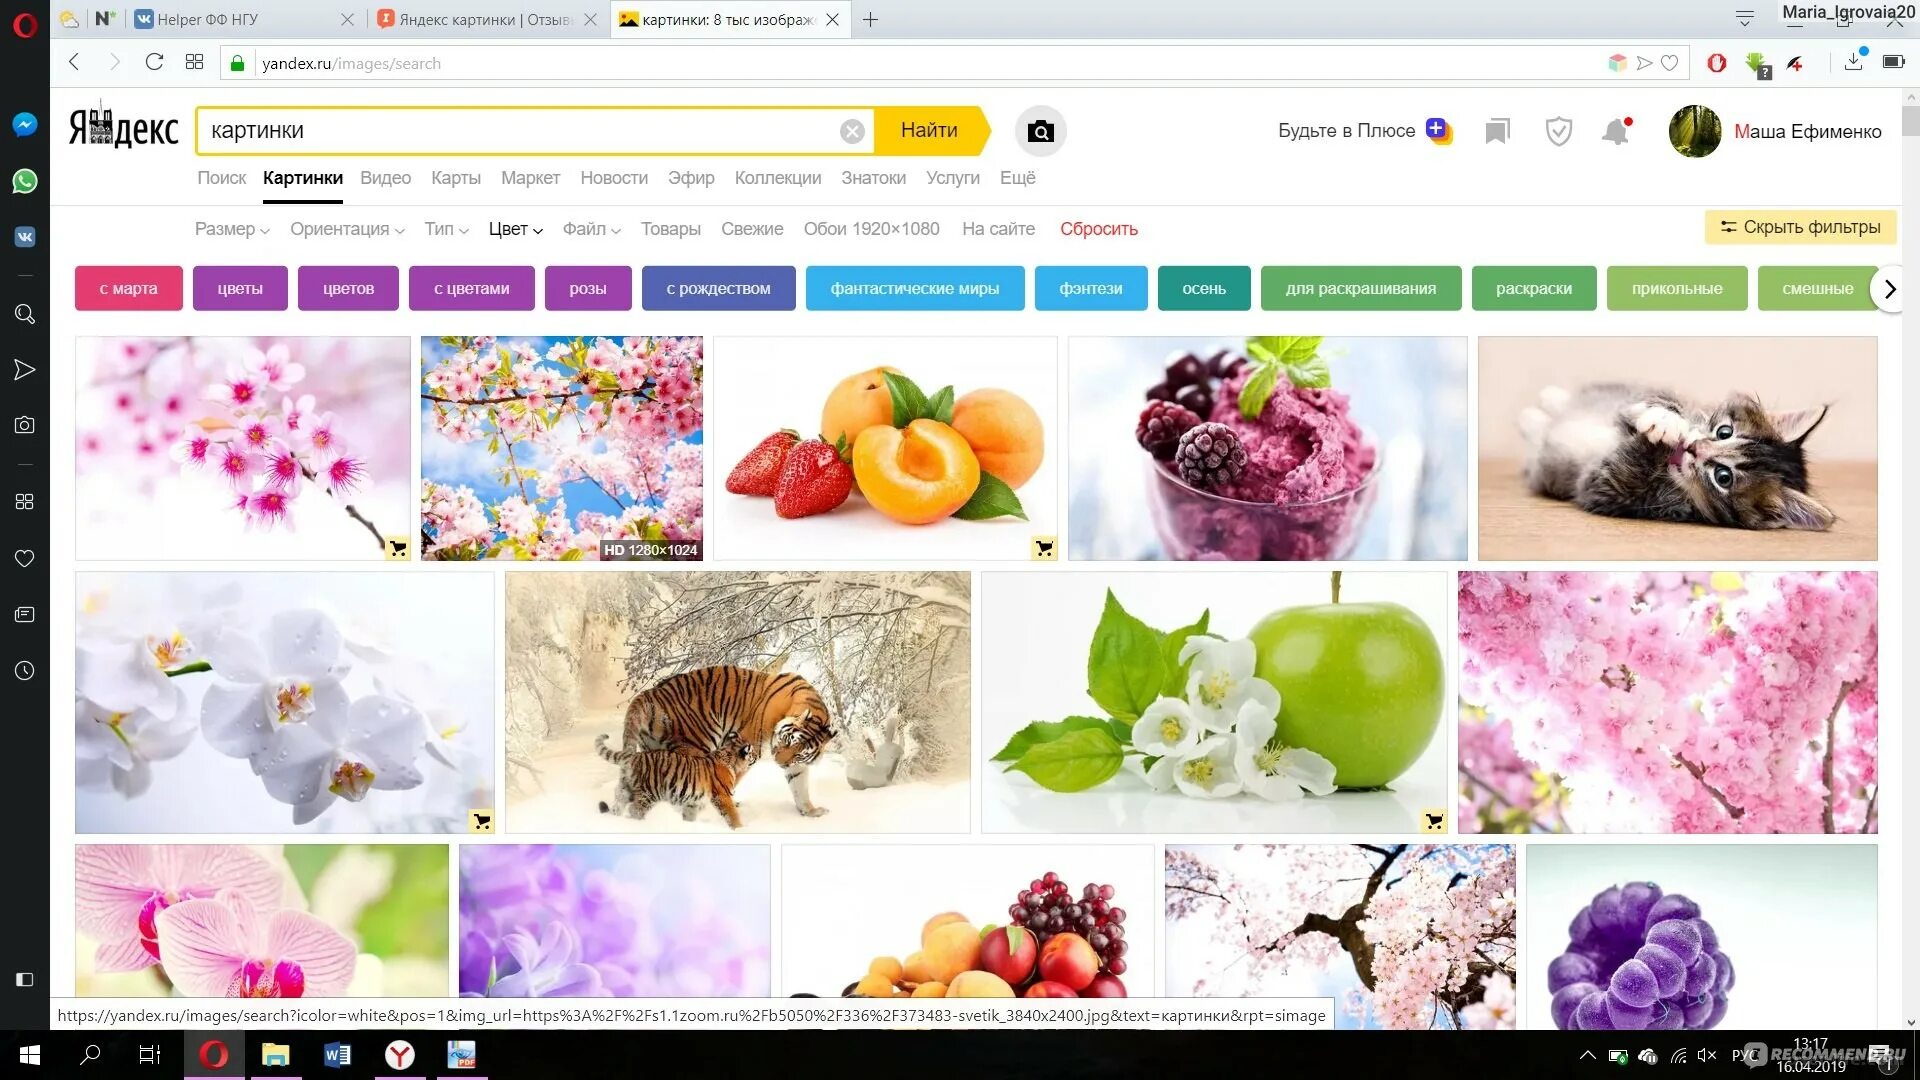 Найти картинку по картинке. Искать по картинке. Яндекс картинки. Поисковик по картинке Яндекс. Яндекс картинки загрузить картинку.